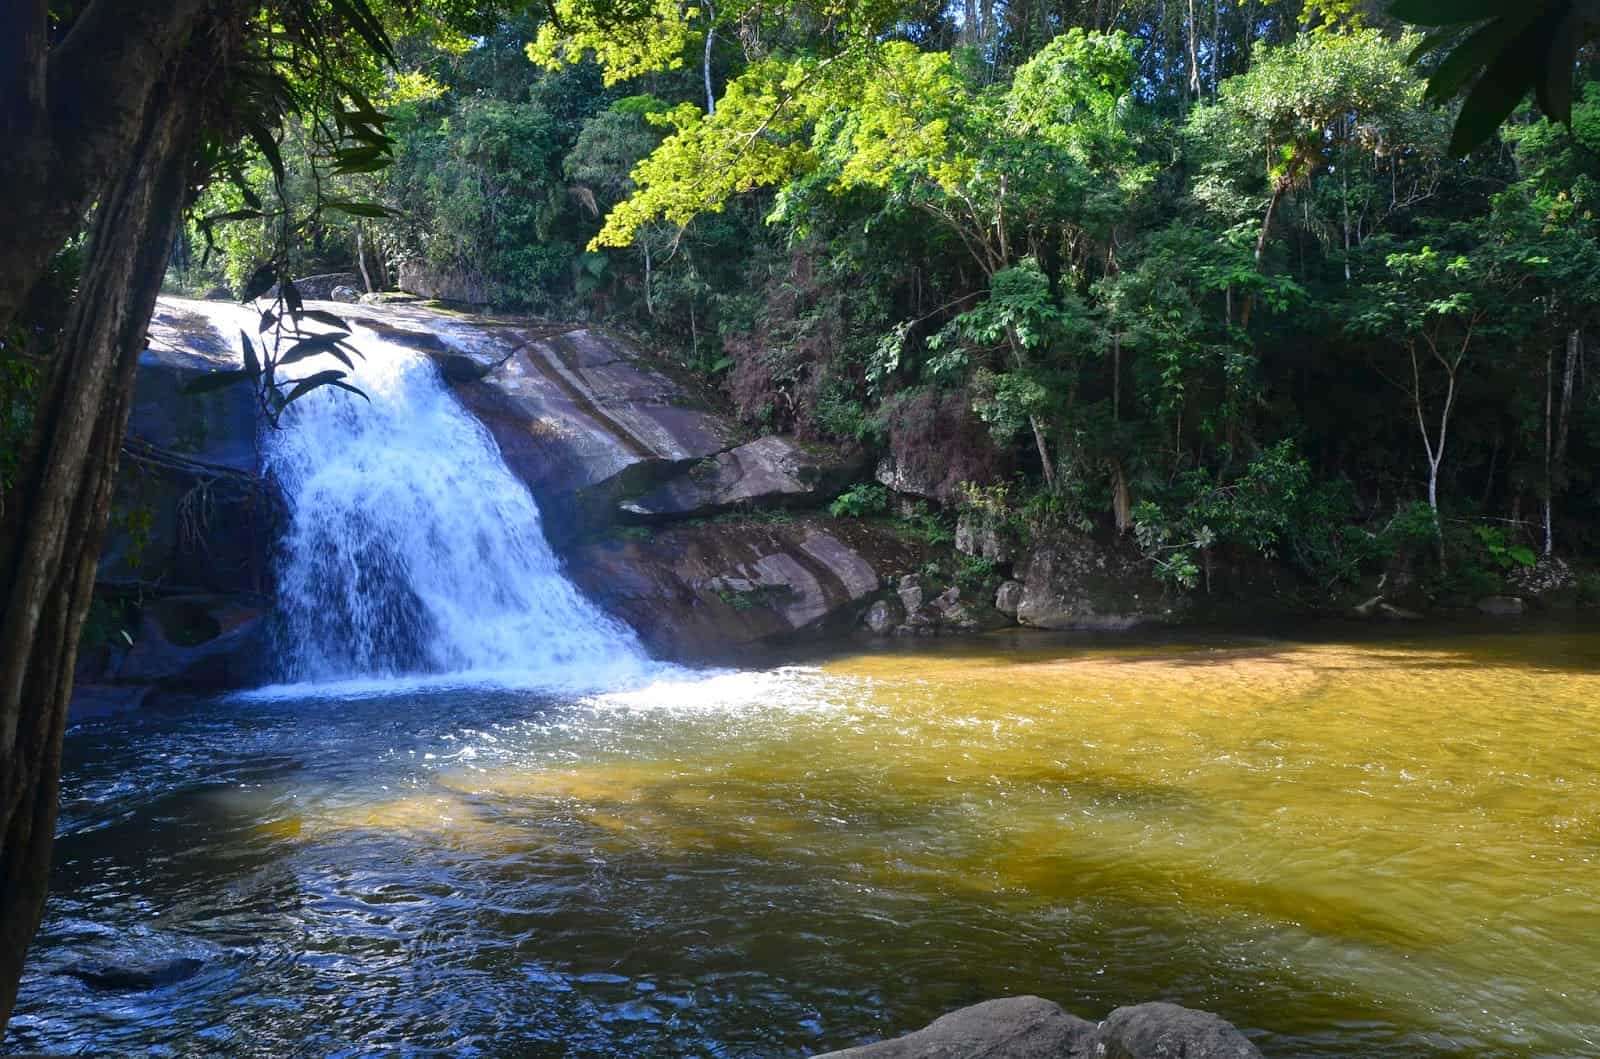 Cachoeira do Prumirim in Ubatuba, Brazil